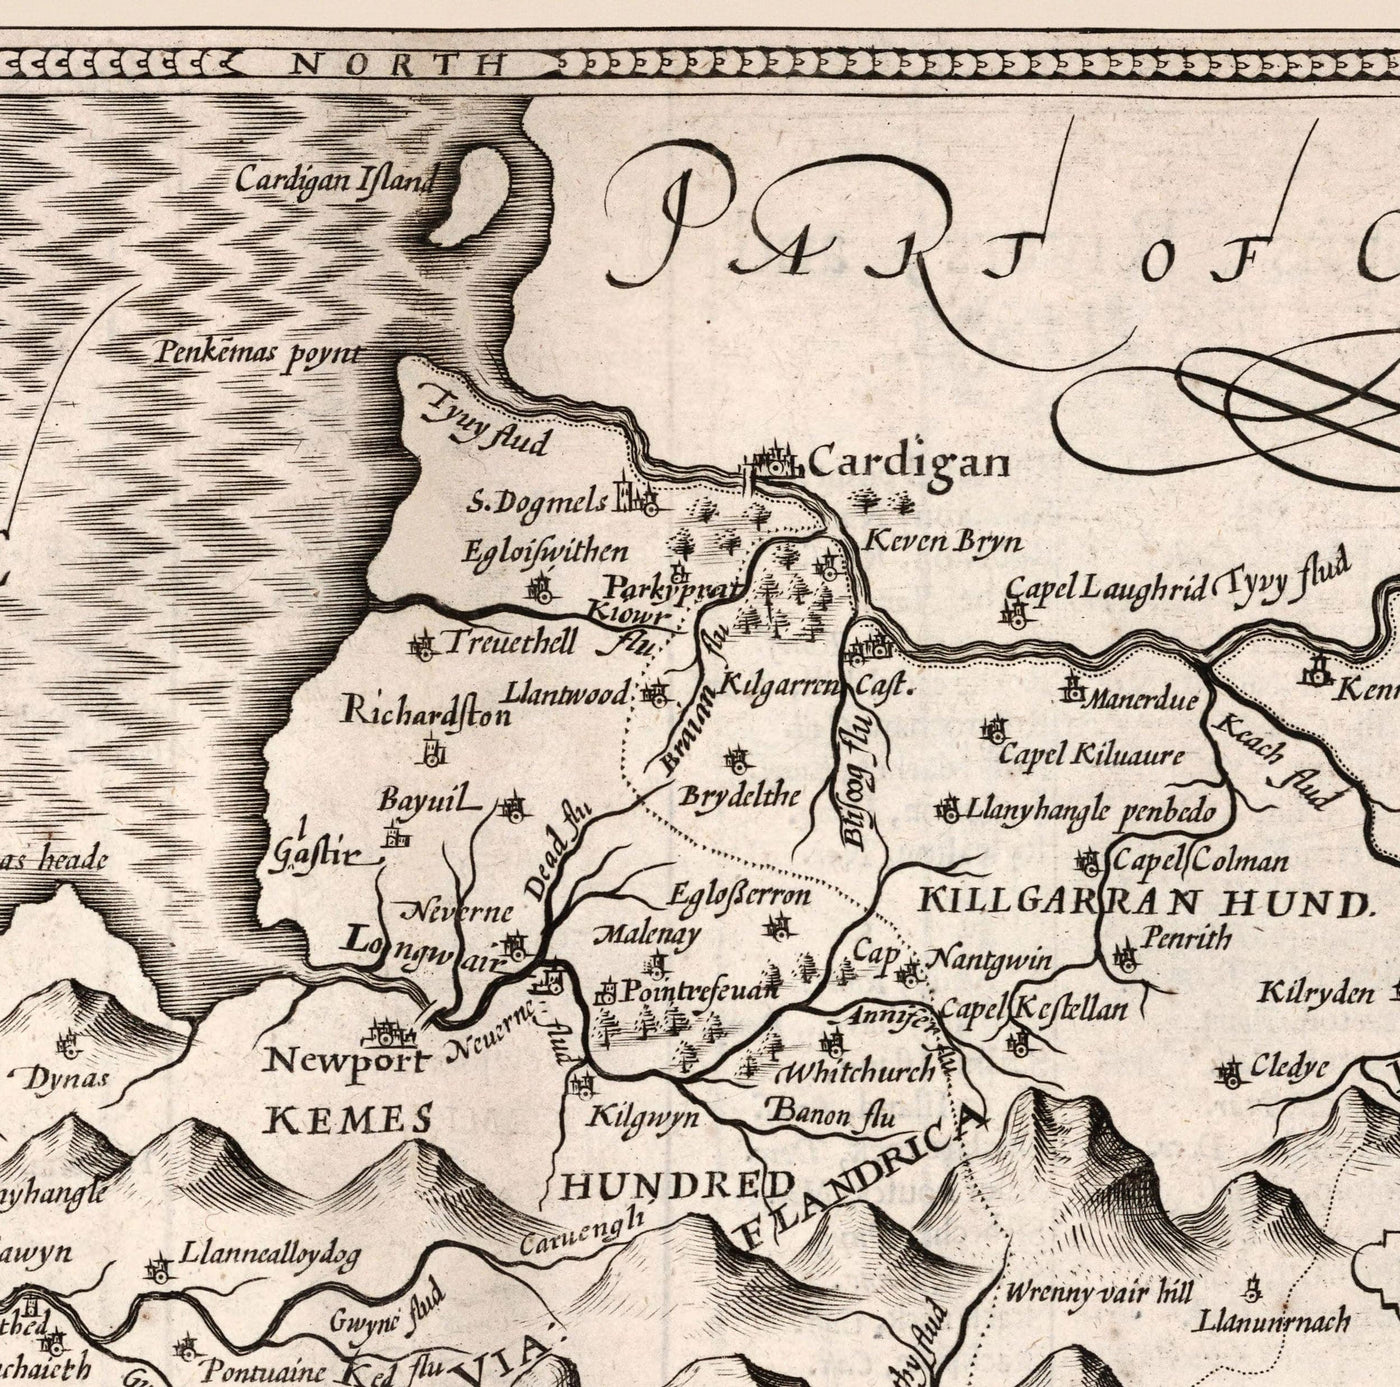 Vieille carte monochrome de Pembrokeshire, Pays de Galles 1611 John Vitesse - Haverfordwest, St Davids, Garde de poisson, Sud-Ouest